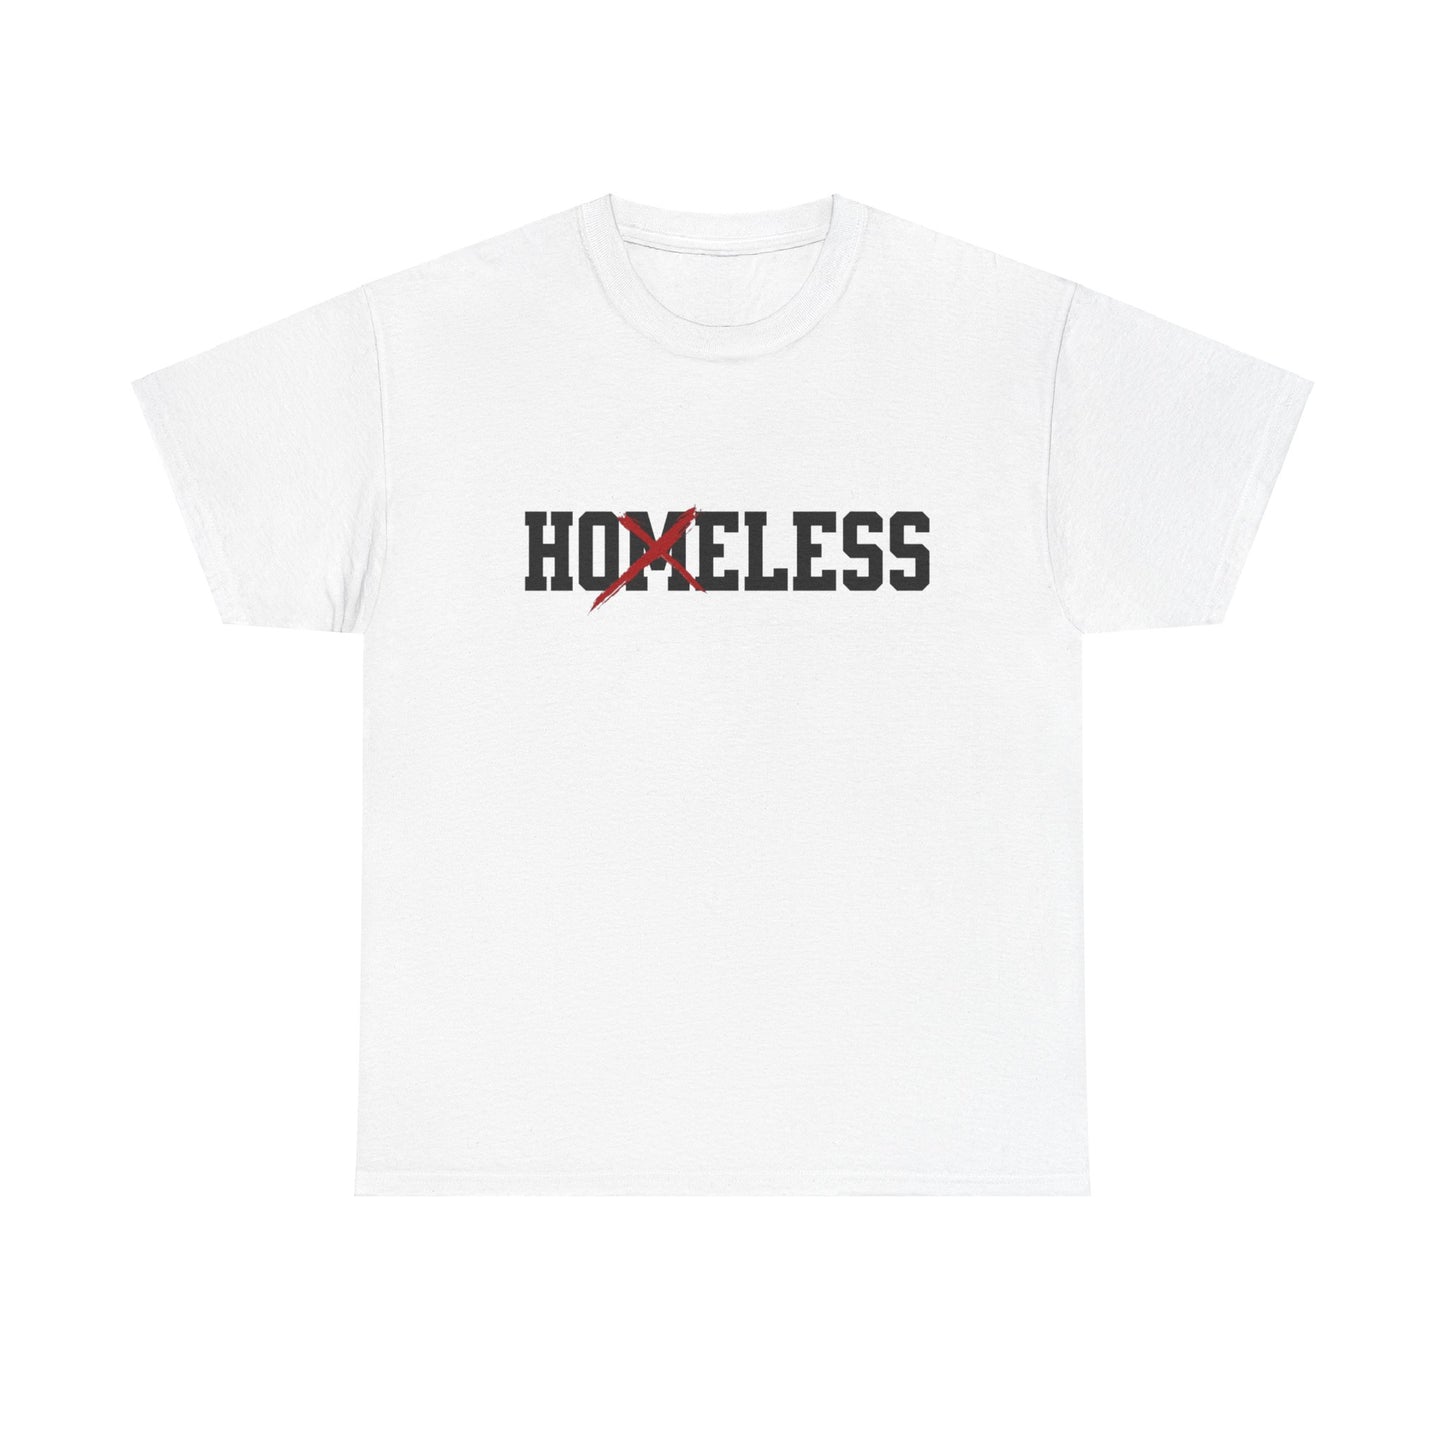 Unisex Shirt in weiß mit dem Spruch Homeless drauf. Das M ist durchgestrichen; also steht auf dem Shirt Hoeless.